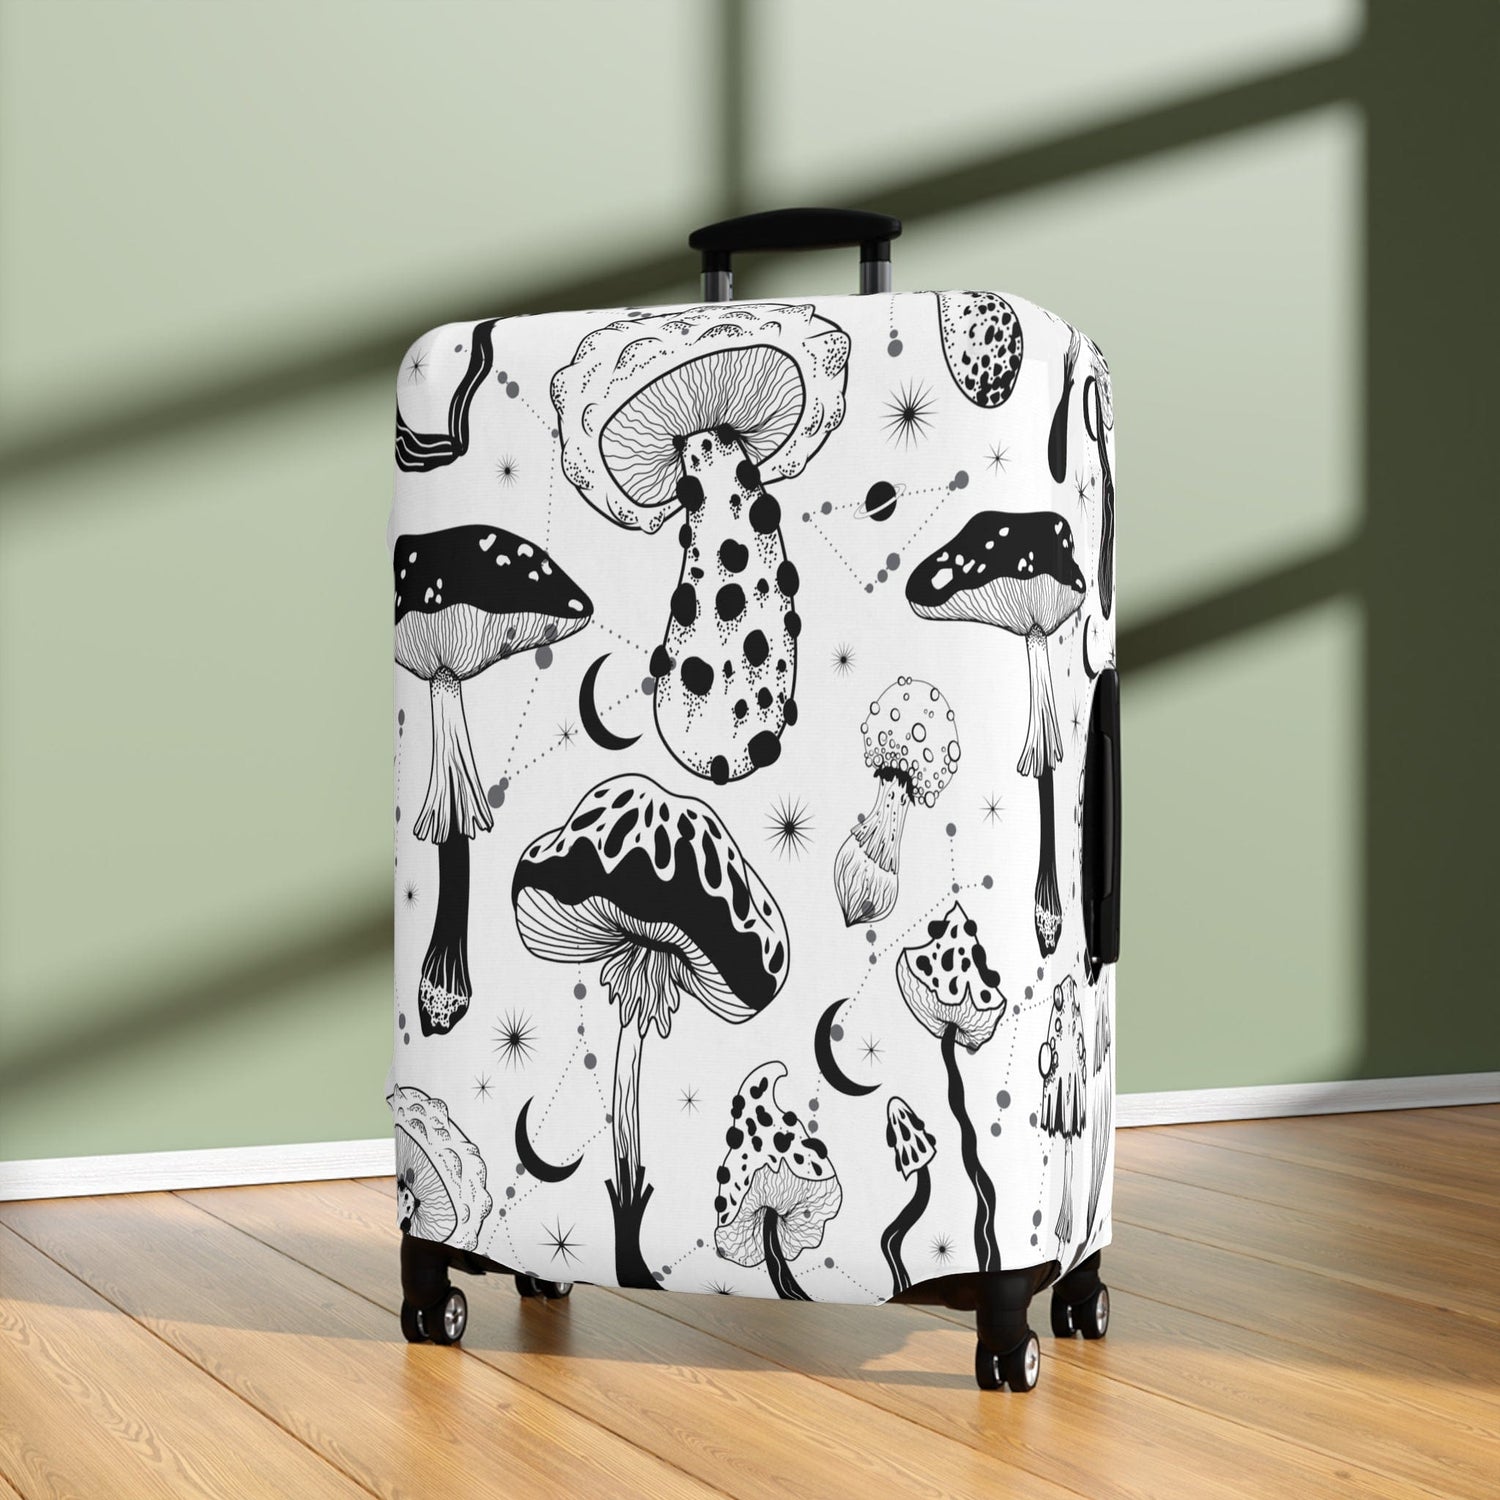 Kate McEnroe New York Mystical Mushroom Cottagecore Luggage CoverLuggage Covers10311215857710216174